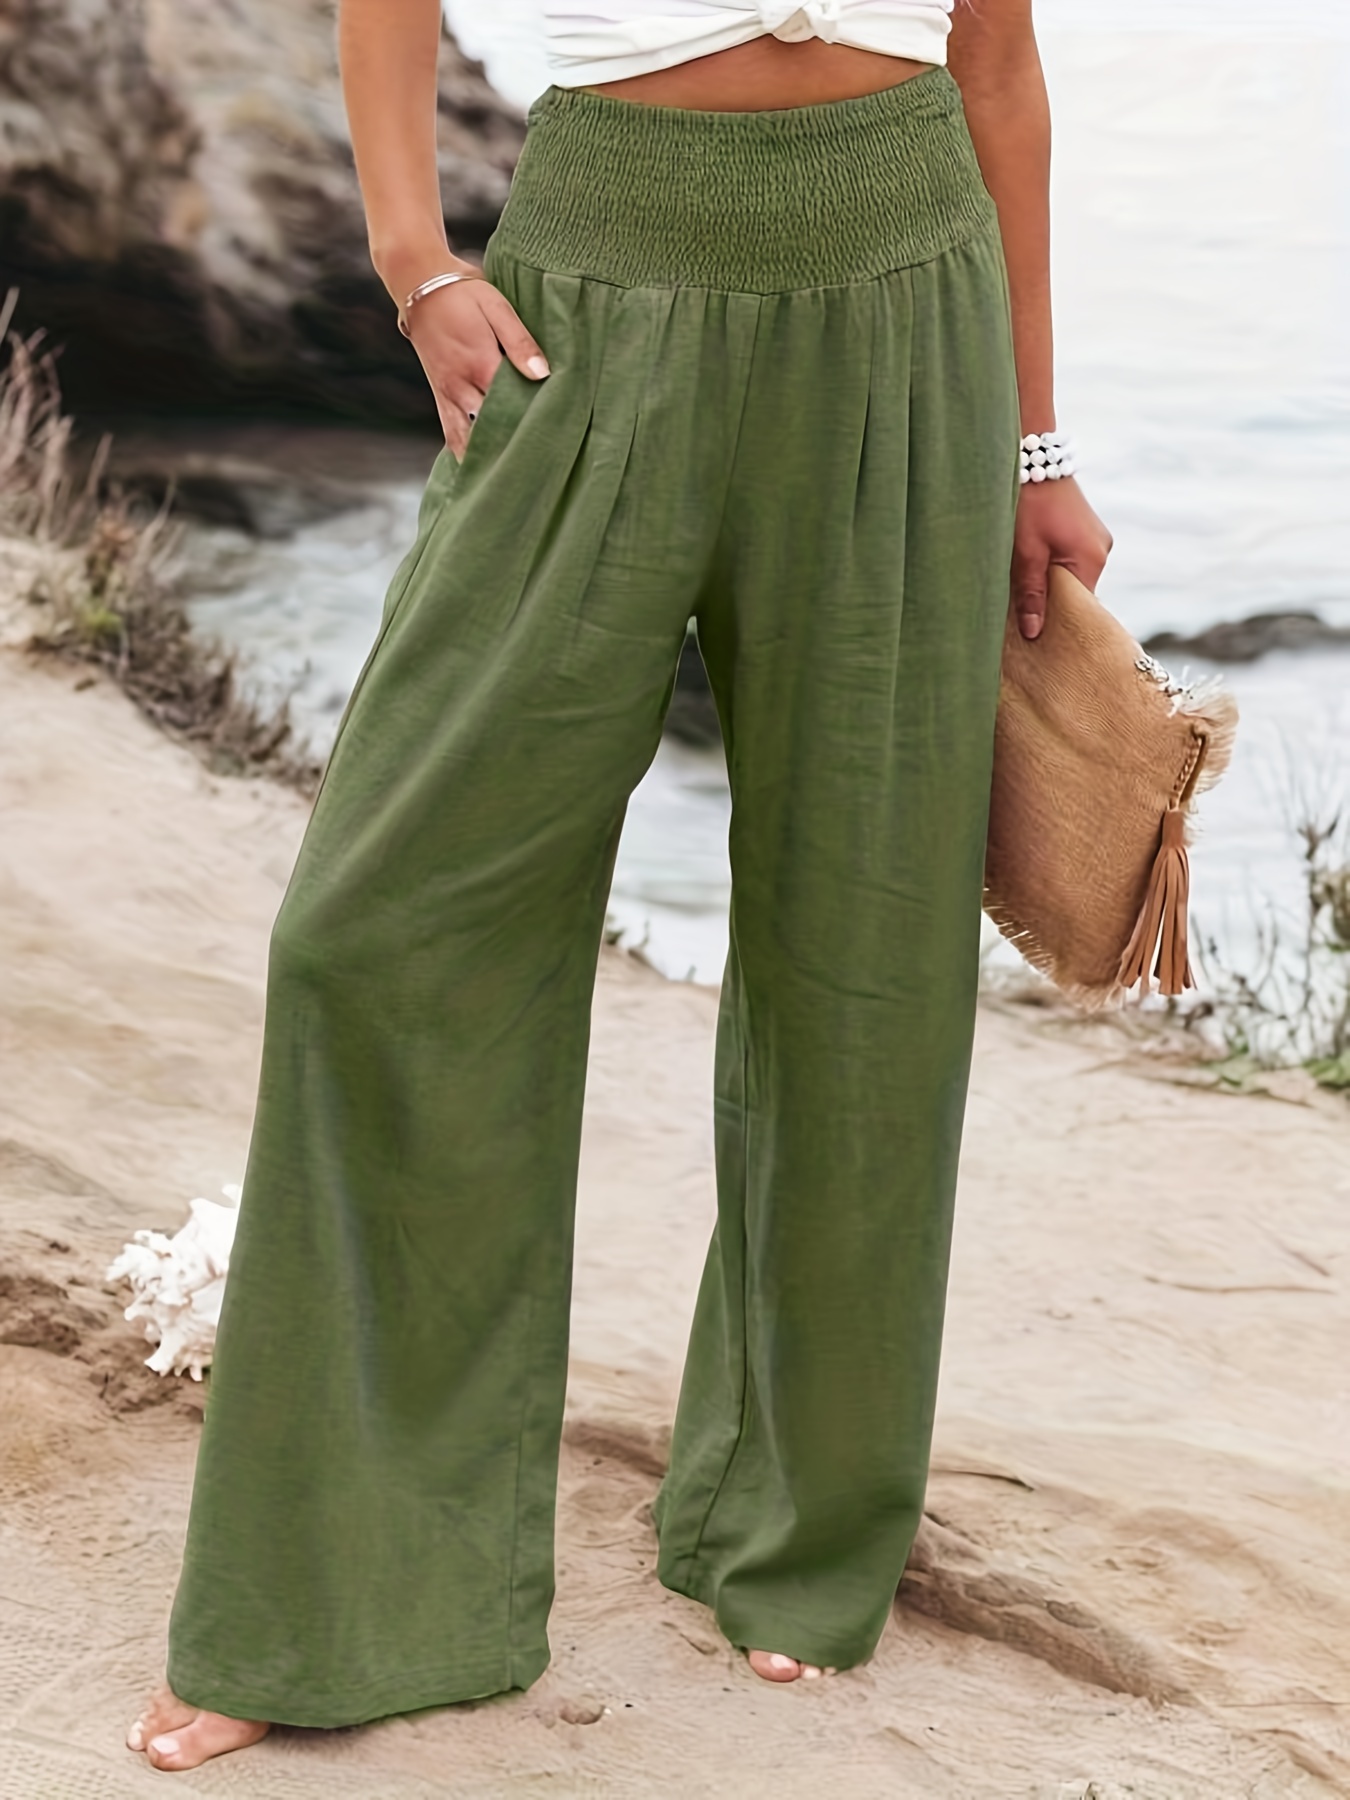 Womens Wide Leg Beach Pants Outdoor Elastic Waist Side Pockets